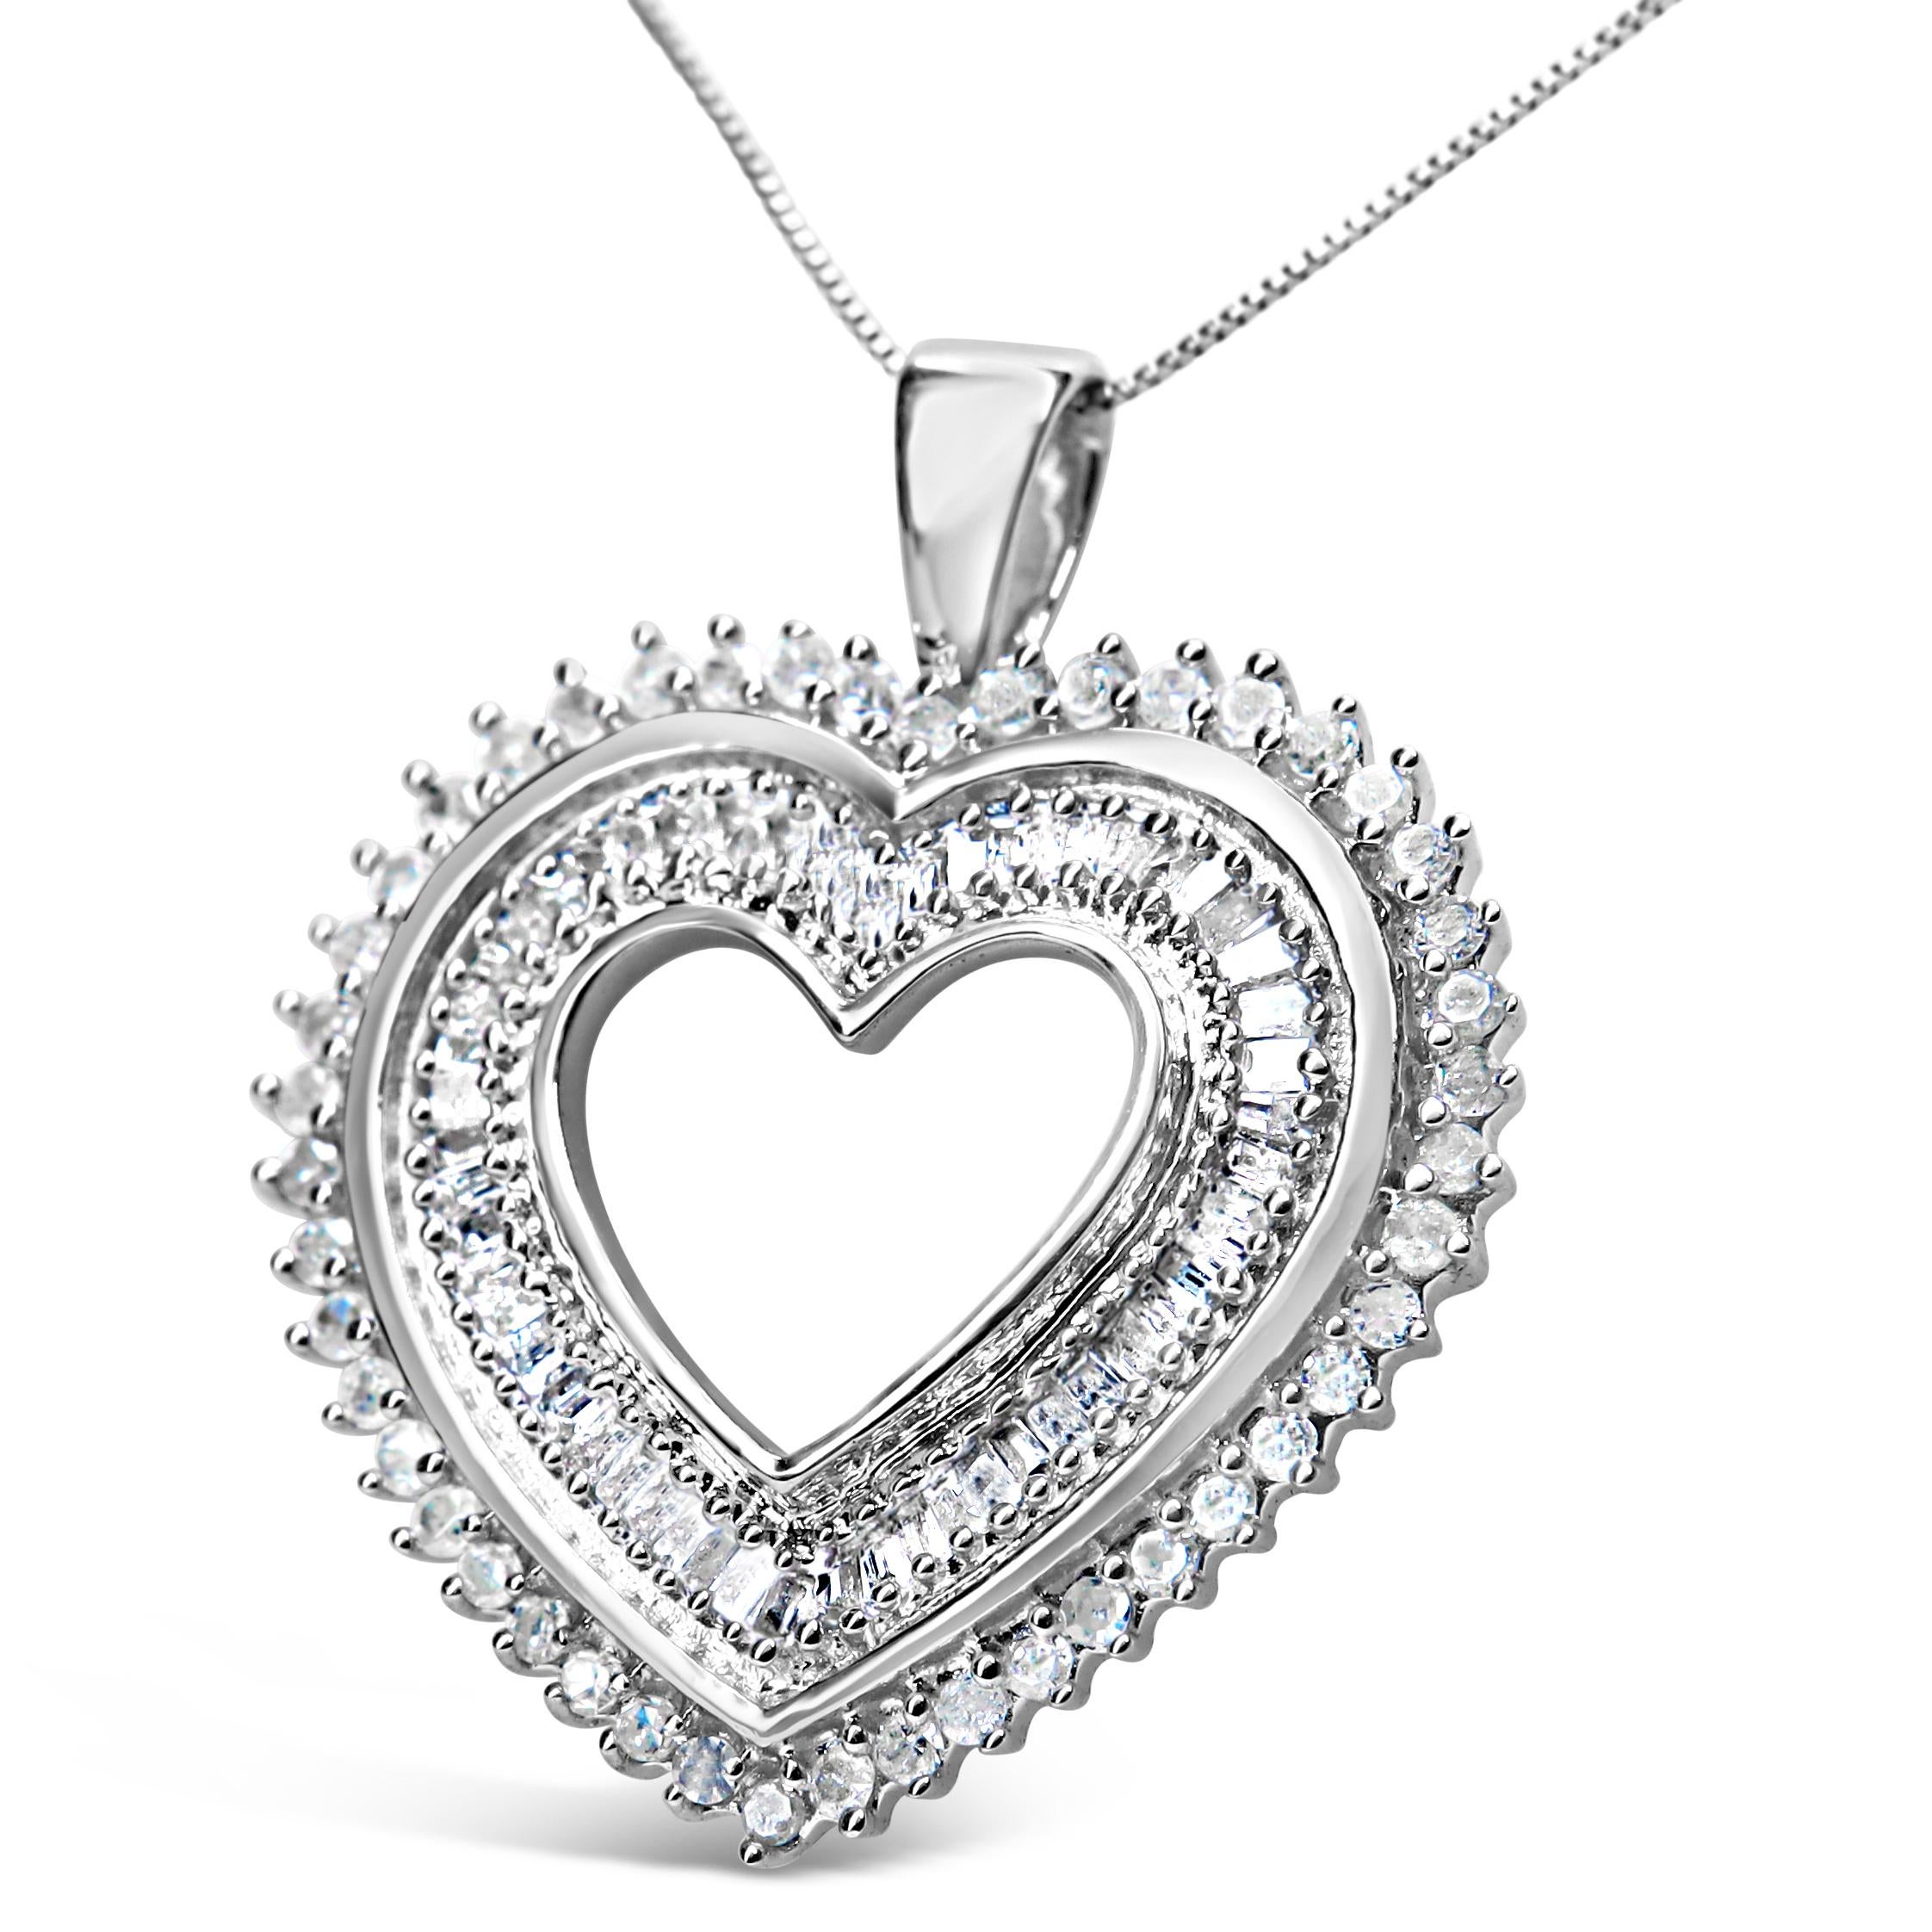 Étincelant d'une impressionnante série de diamants de 1,0 ctw, ce collier pendentif à cœur ouvert pour elle est une magnifique illustration de l'amour et de la romance. L'intérieur du cœur est bordé de diamants baguettes scintillants en serti clos,